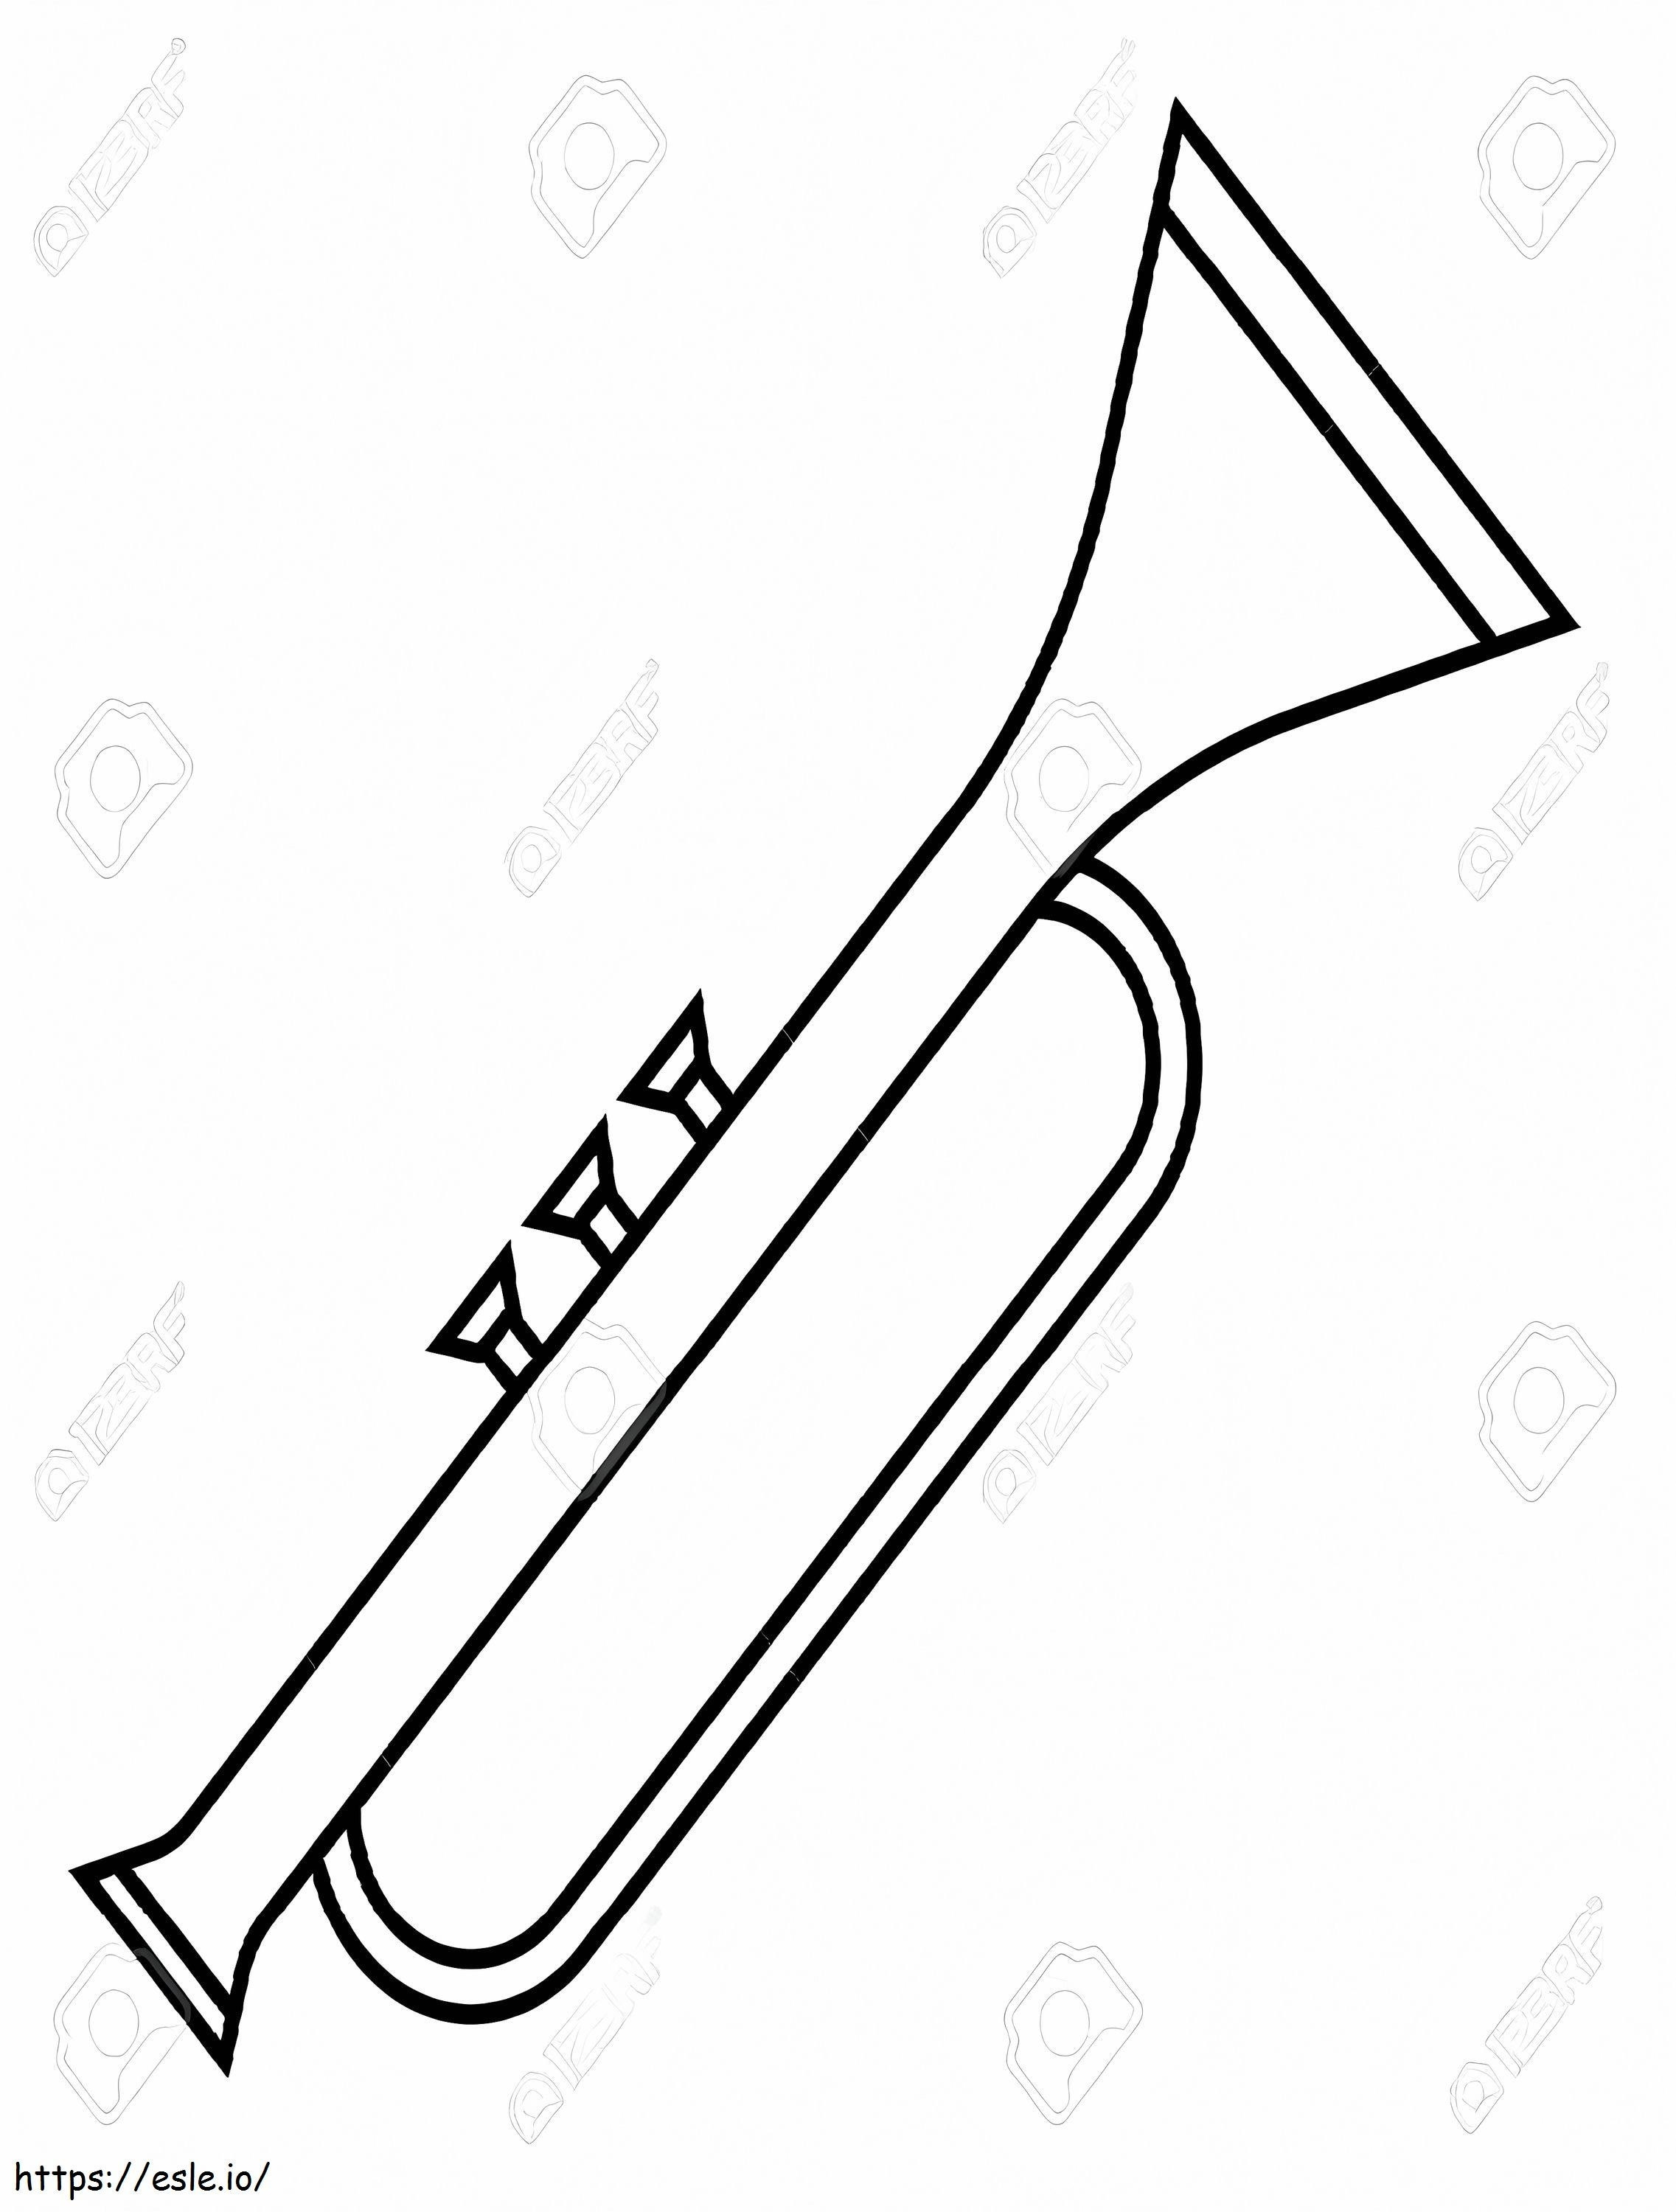 Einzelne Trompete 2 ausmalbilder